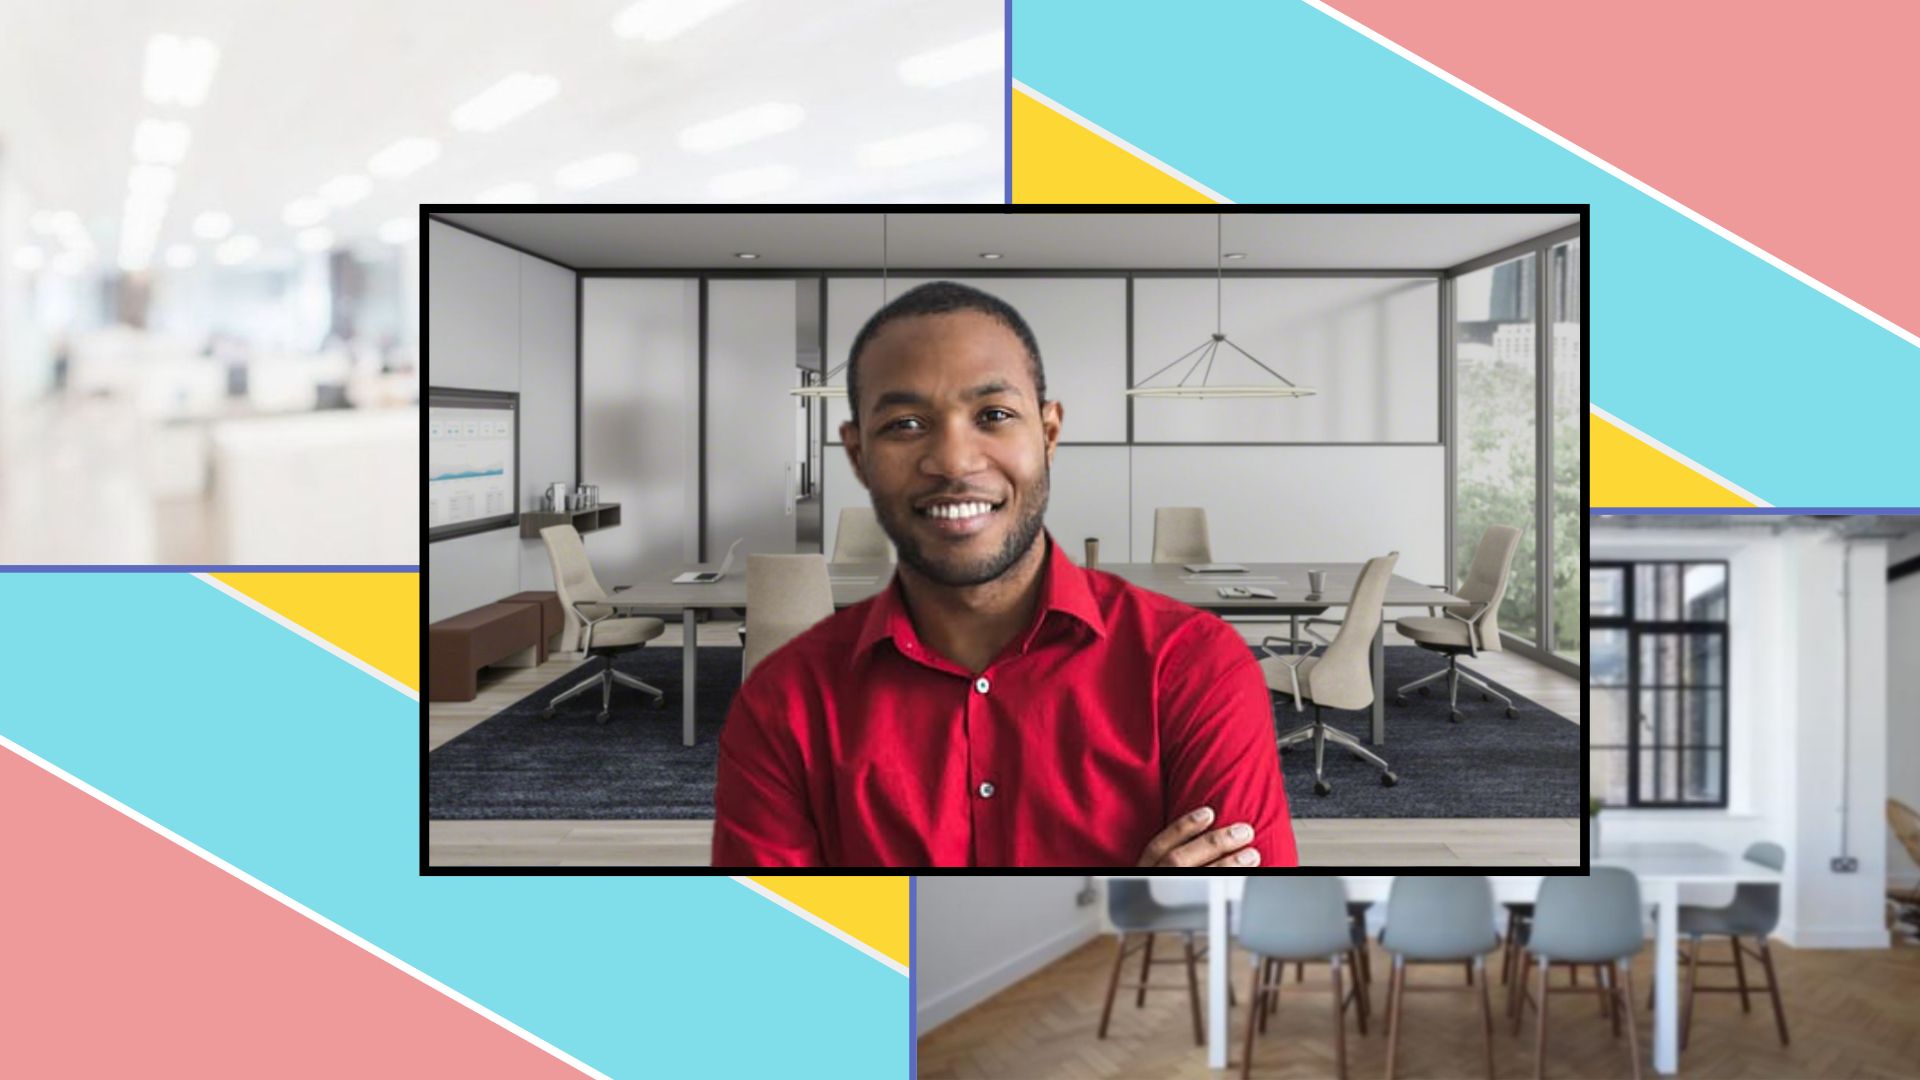 Sử dụng Zoom nhưng muốn nổi bật trên các cuộc họp với nền ảo chuyên nghiệp? Với chức năng tạo virtual background giống phòng văn phòng, bạn có thể làm được điều đó! Xem hình ảnh để biết cách thực hiện và trải nghiệm một cách hoàn hảo nhất!